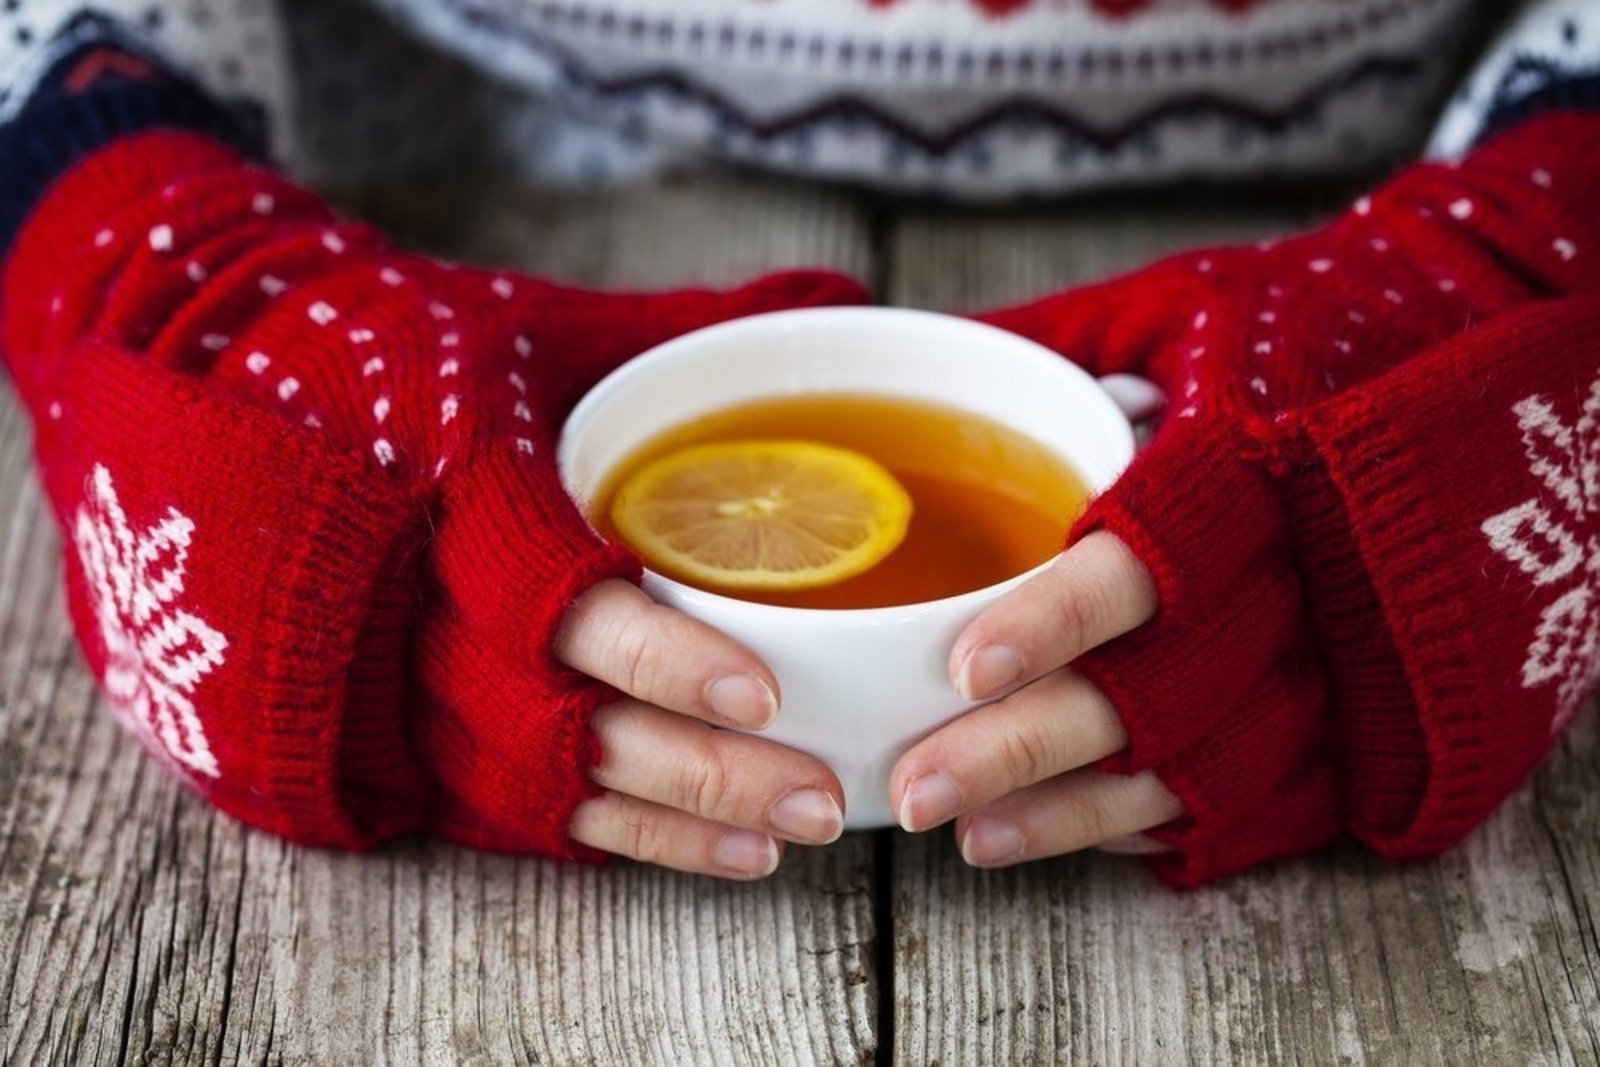 При температуре пьют горячий чай. Горячий чай. Чай зимний. Чашка чая. Чашка чая в руках.